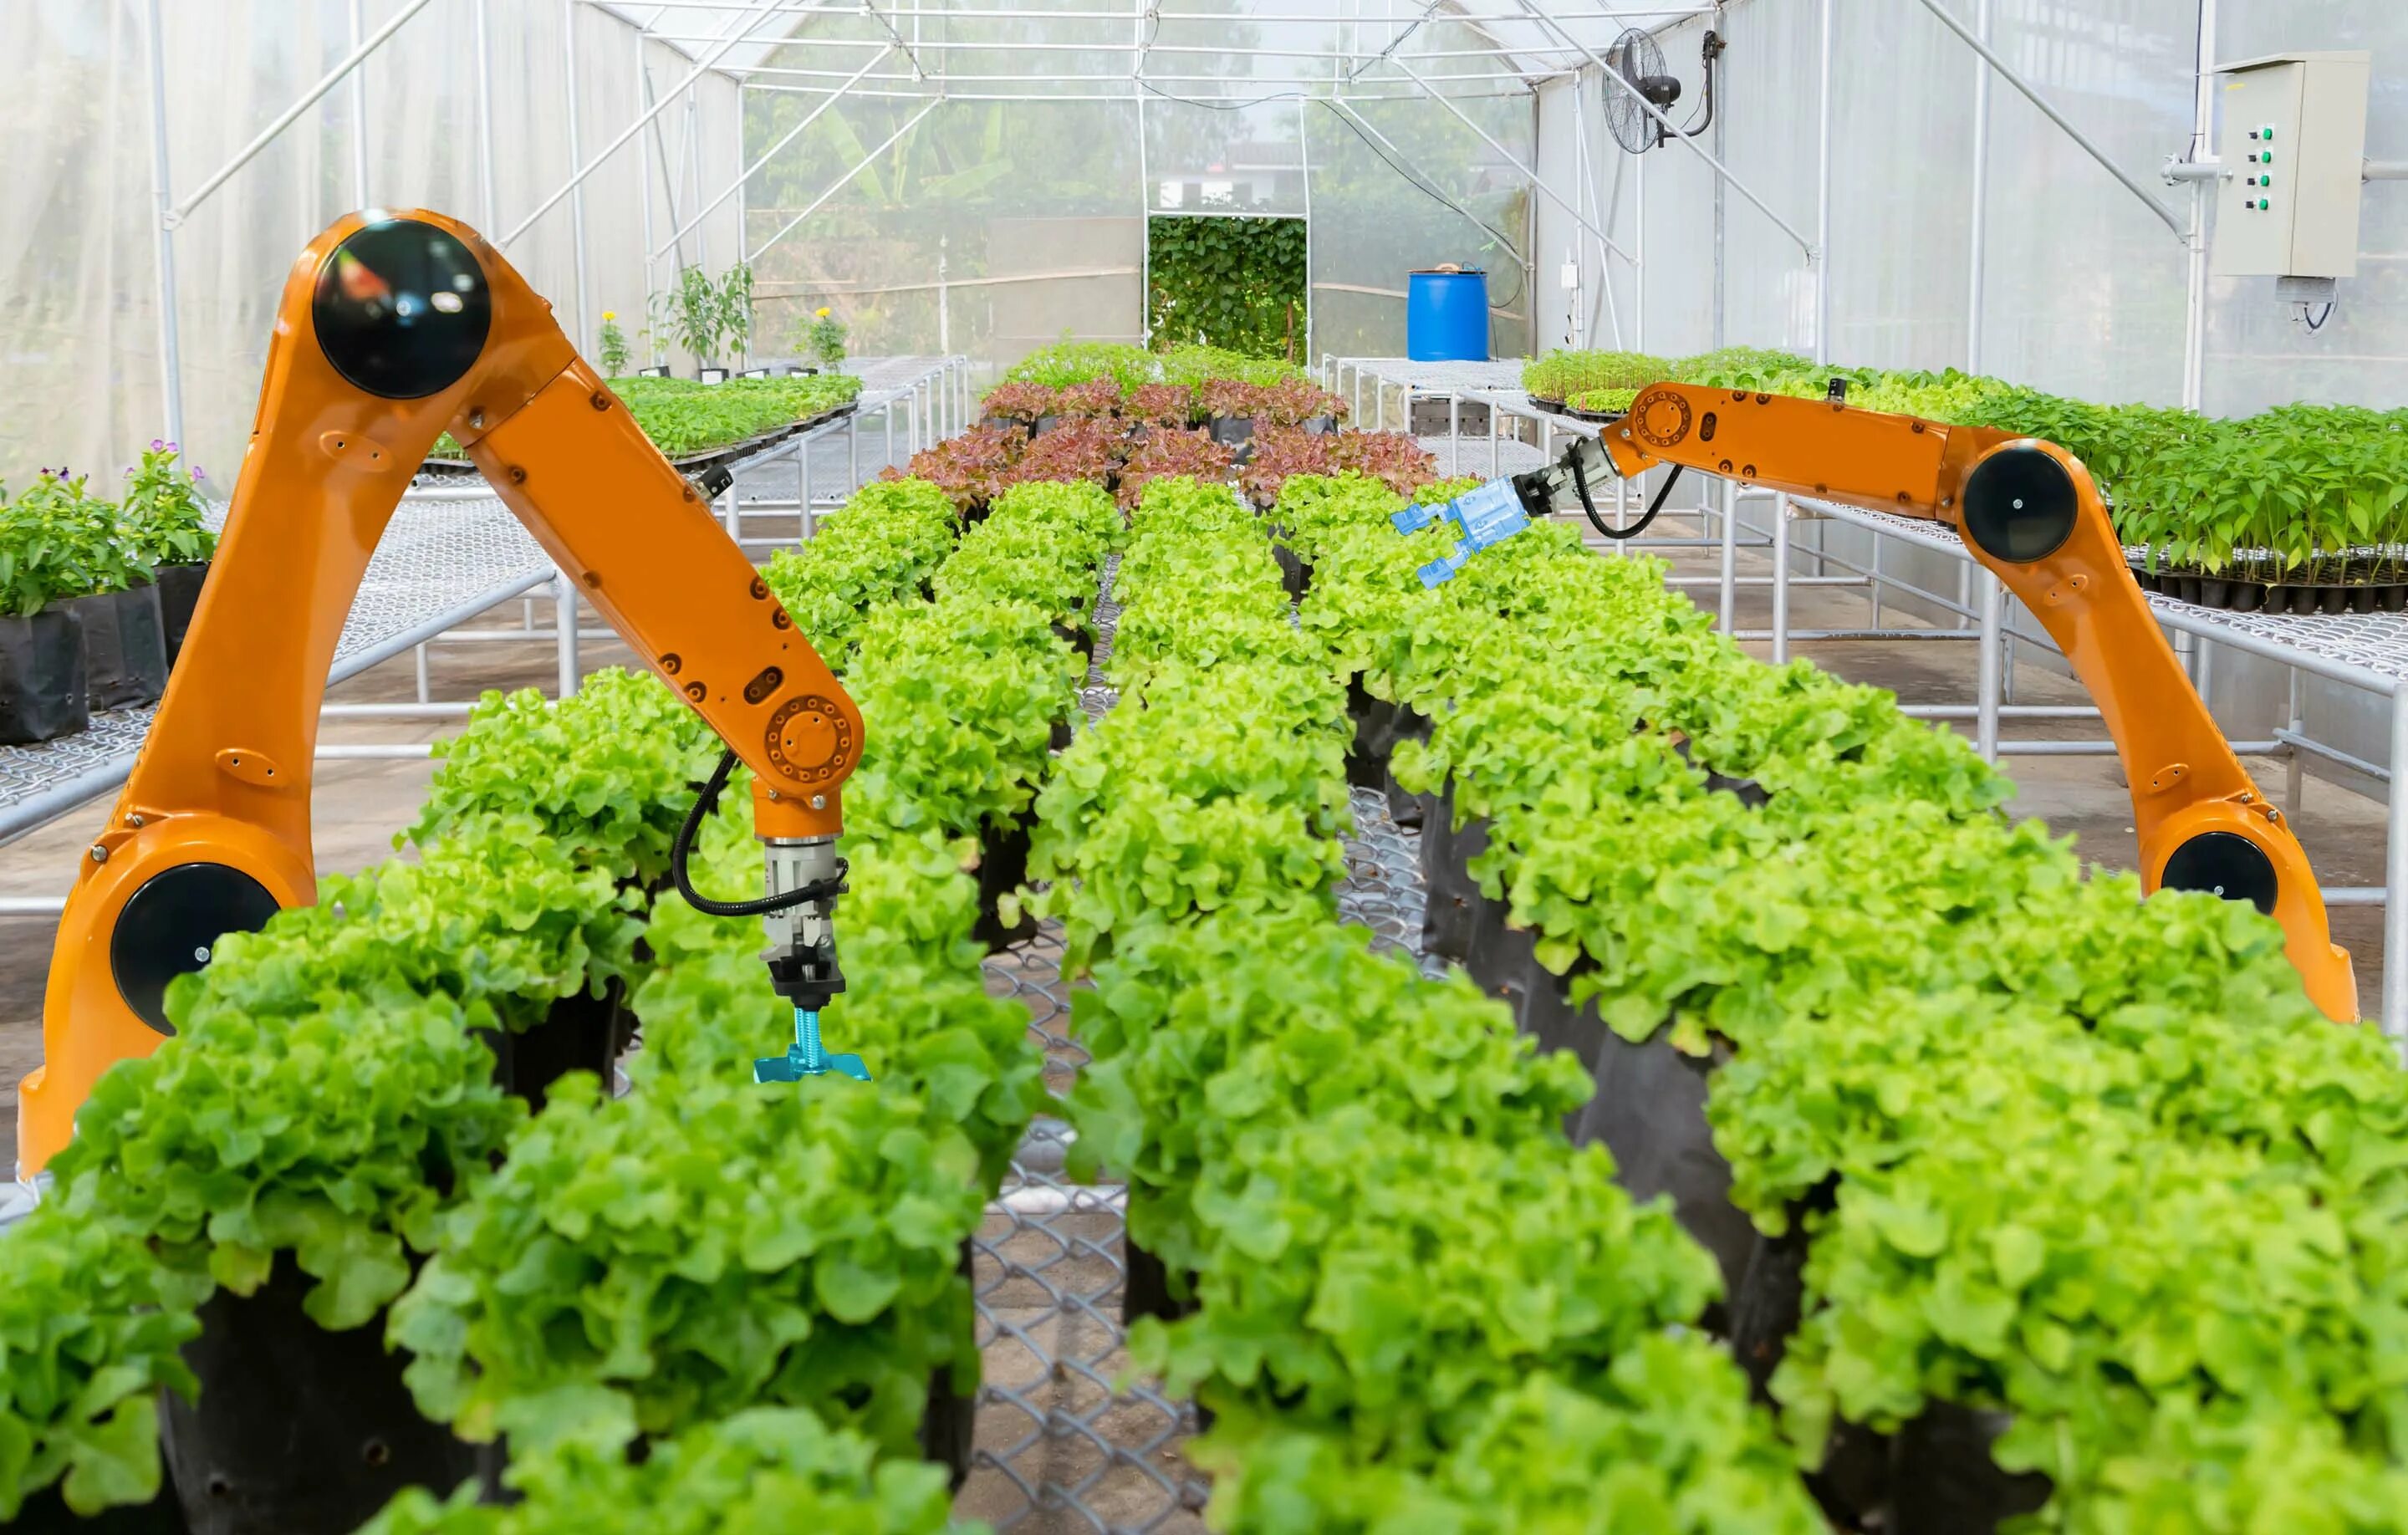 Технология сельскохозяйственного производства. Роботы в сельском хозяйстве. Инновации в сельском хозяйстве. Инновации в растениеводстве. Роботы в растениеводстве.